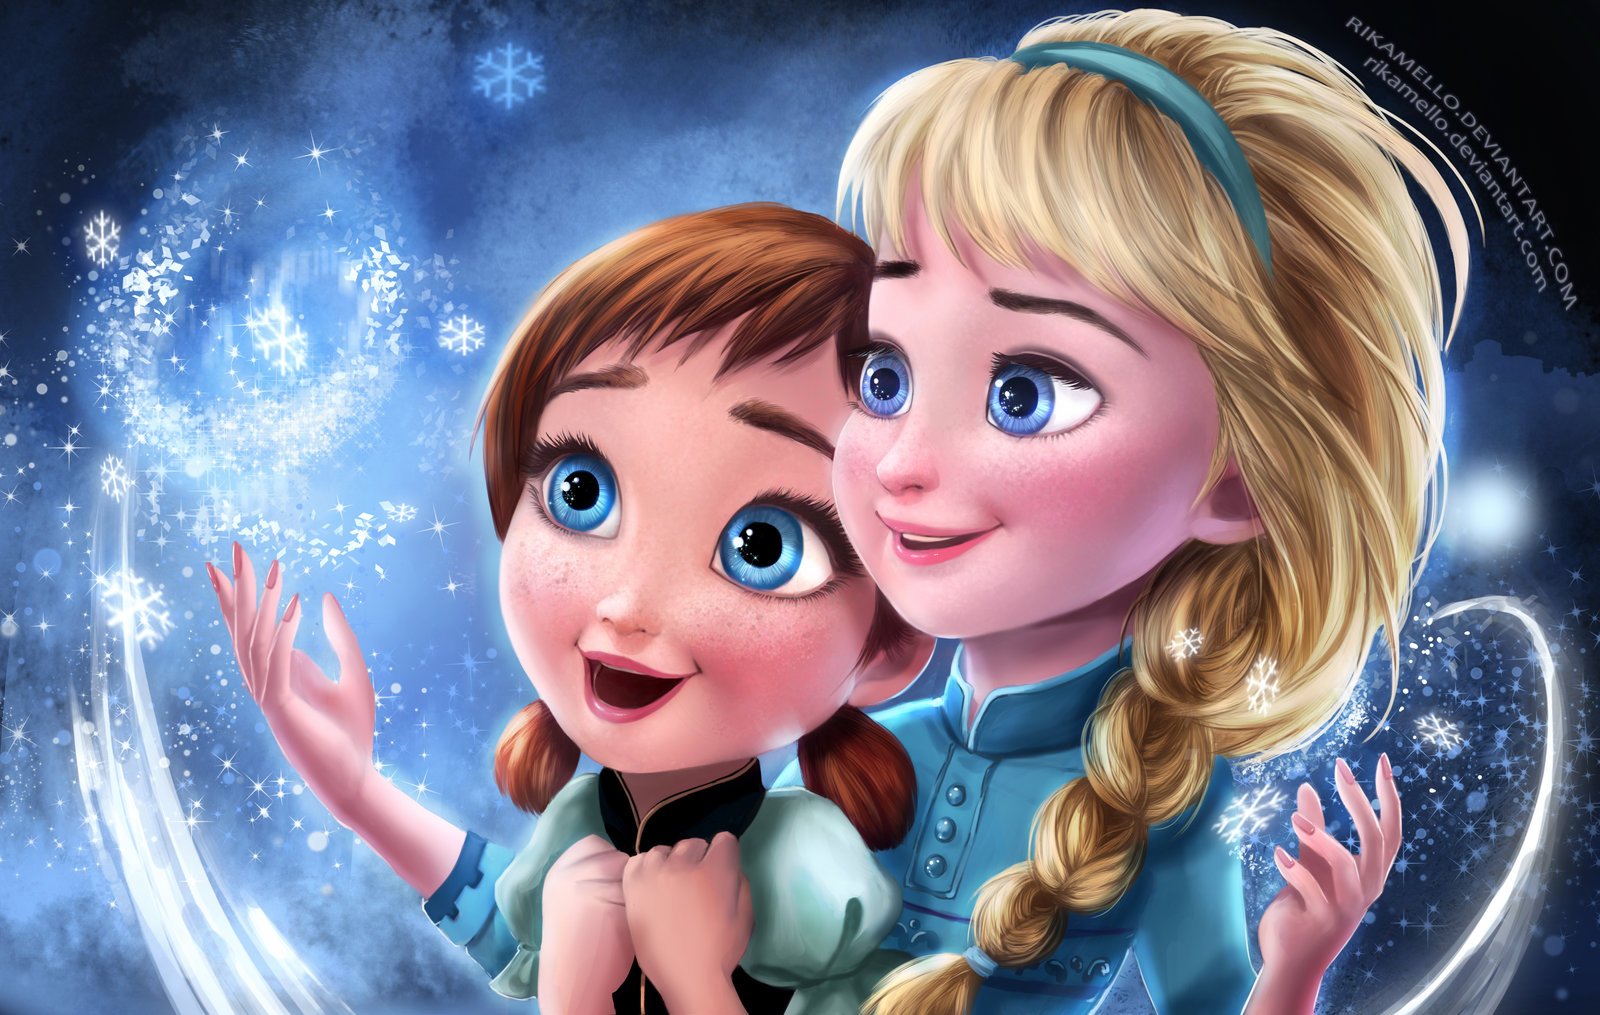 Little Anna and Elsa Frozen